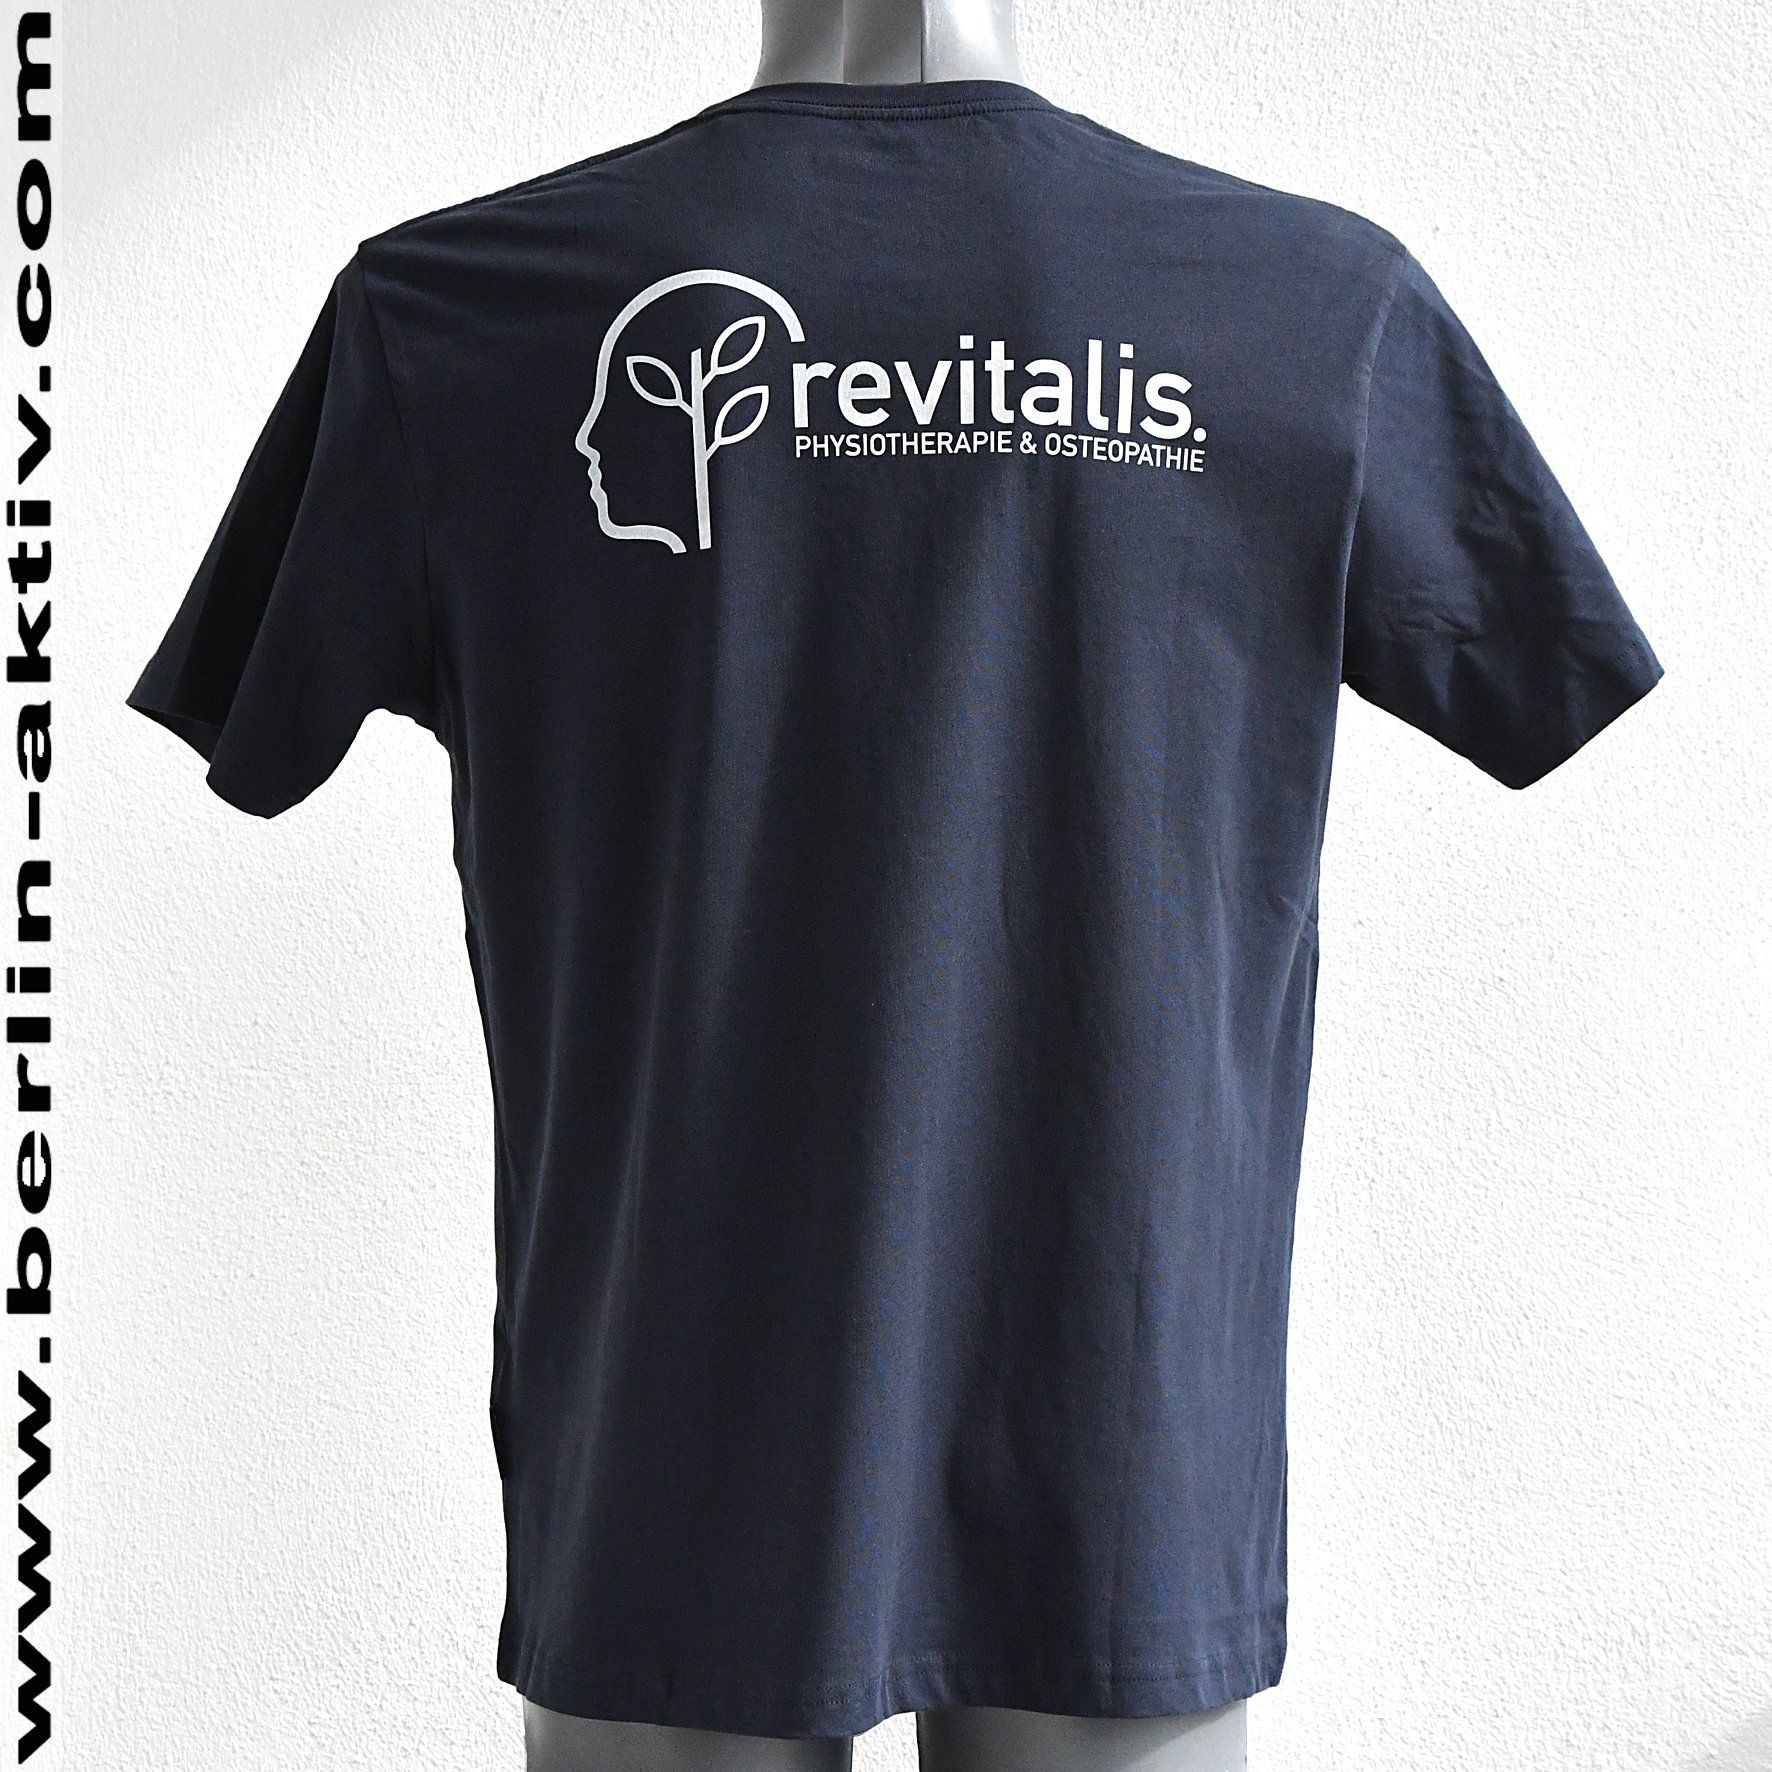 berlin-aktiv.com, Herren T-Shirt, navy blau, 100% Bio Baumwolle, Siebdruck,